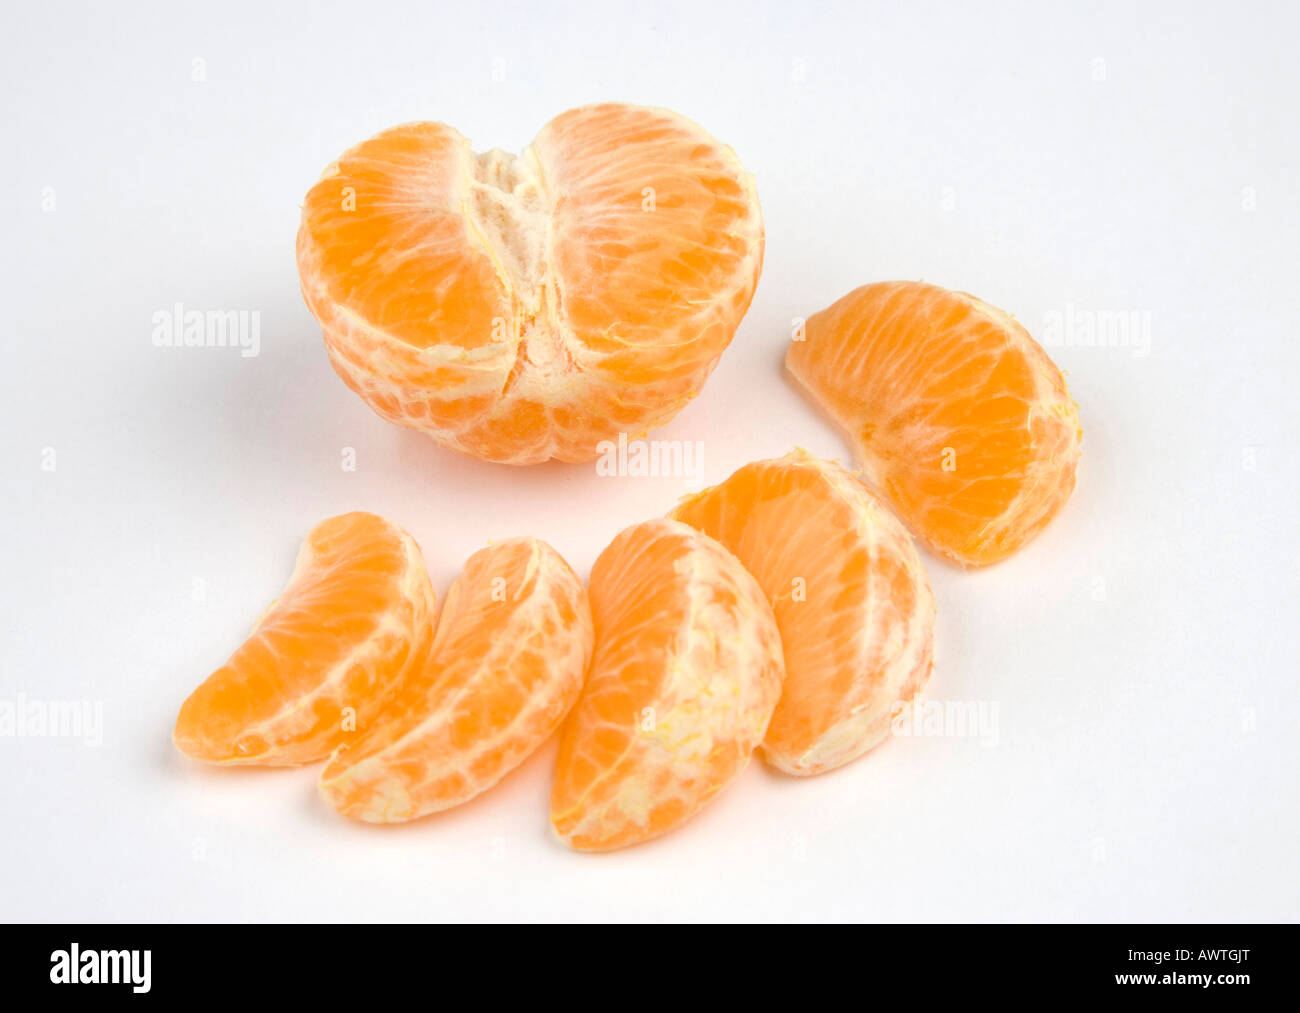 Segments de Mandarin / Clémentine fruits orange Banque D'Images